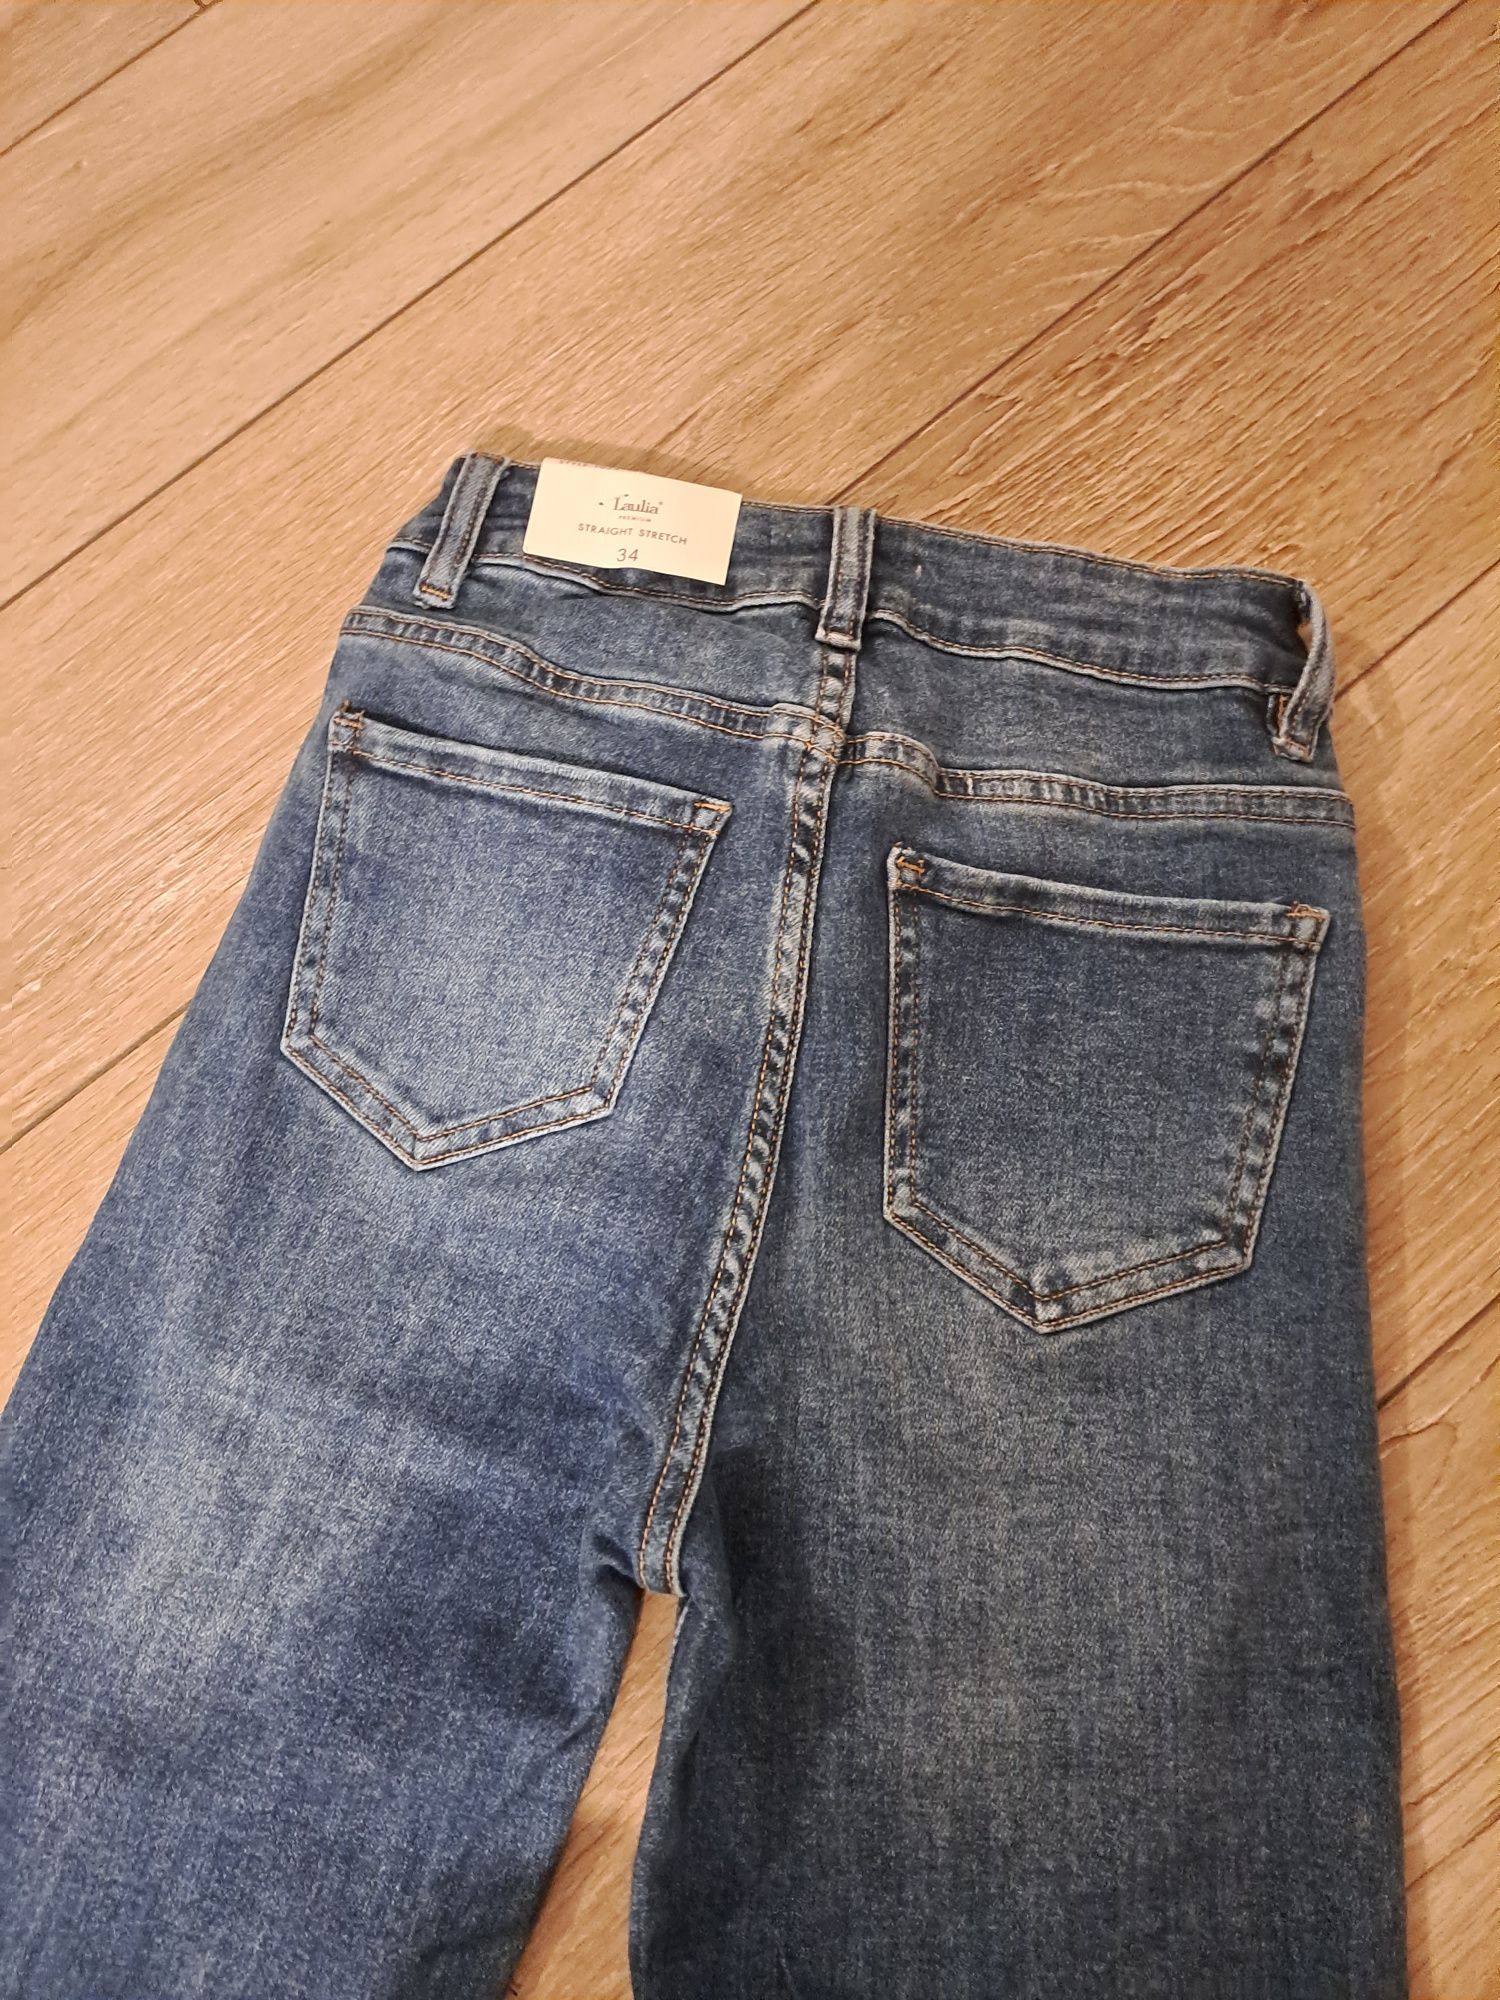 Spodnie, spodnie jeans r 34, xs